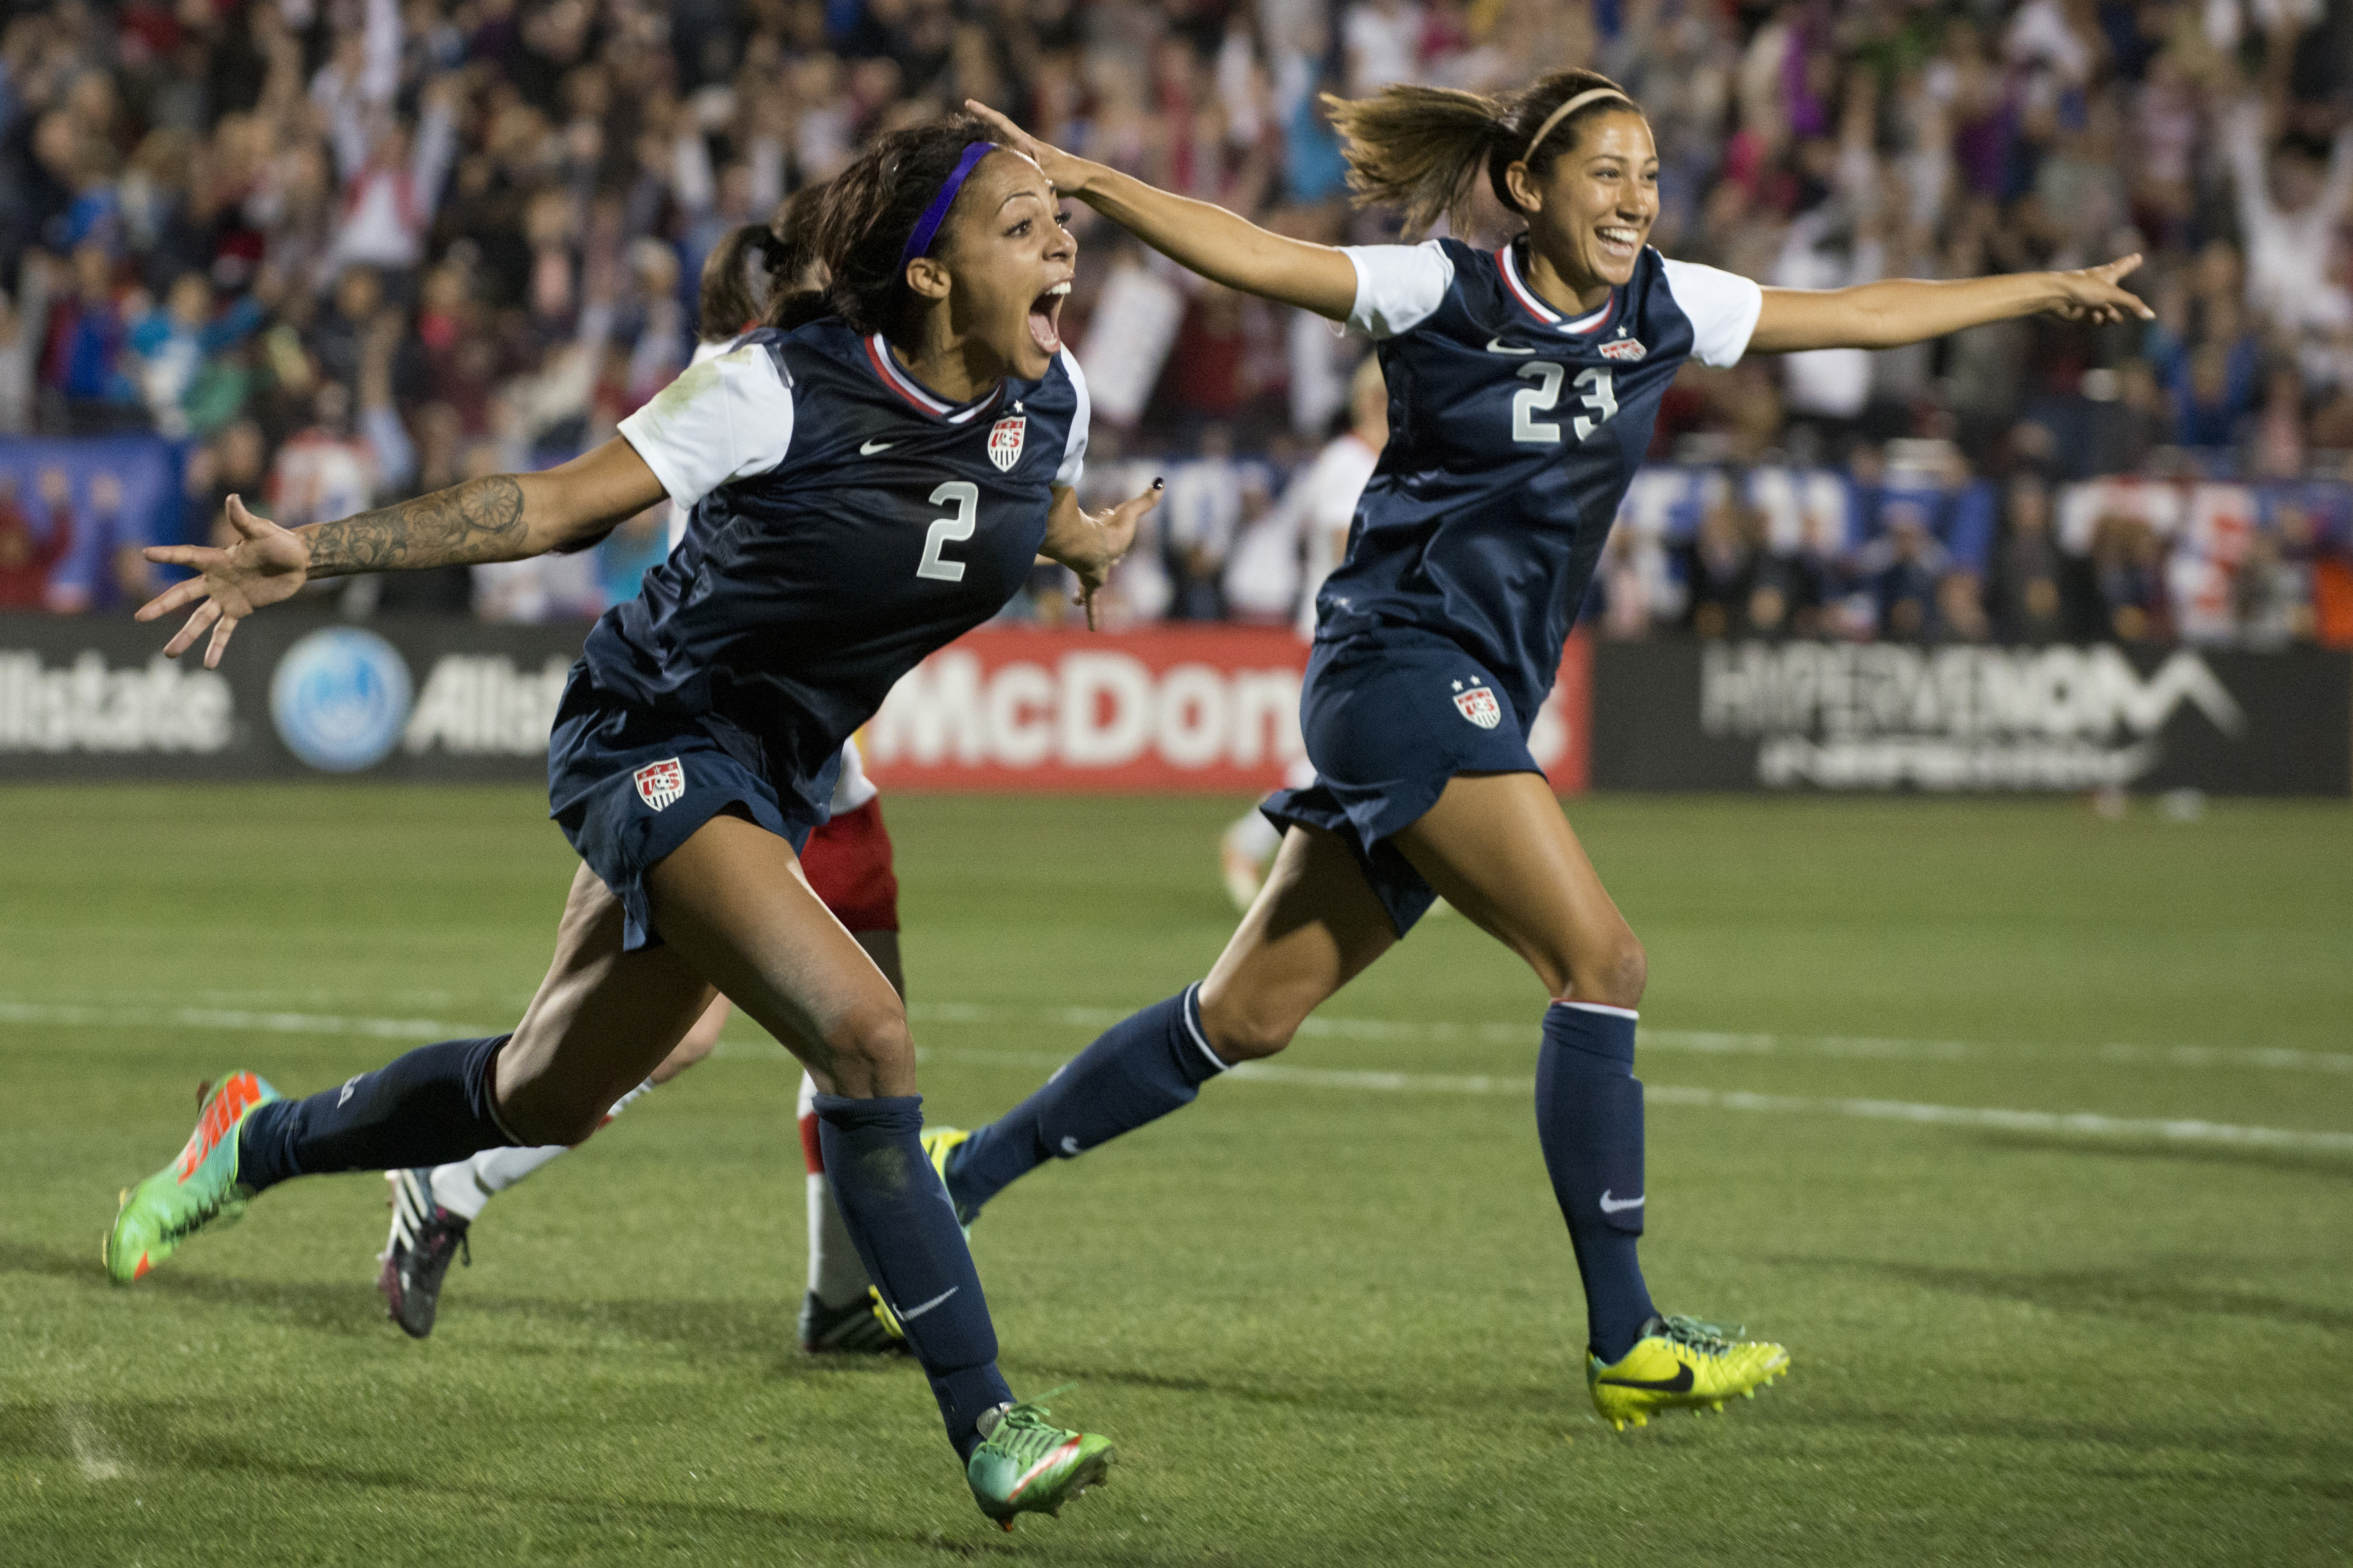 2015 U.S. women's national soccer team - Meet the U.S. women's soccer